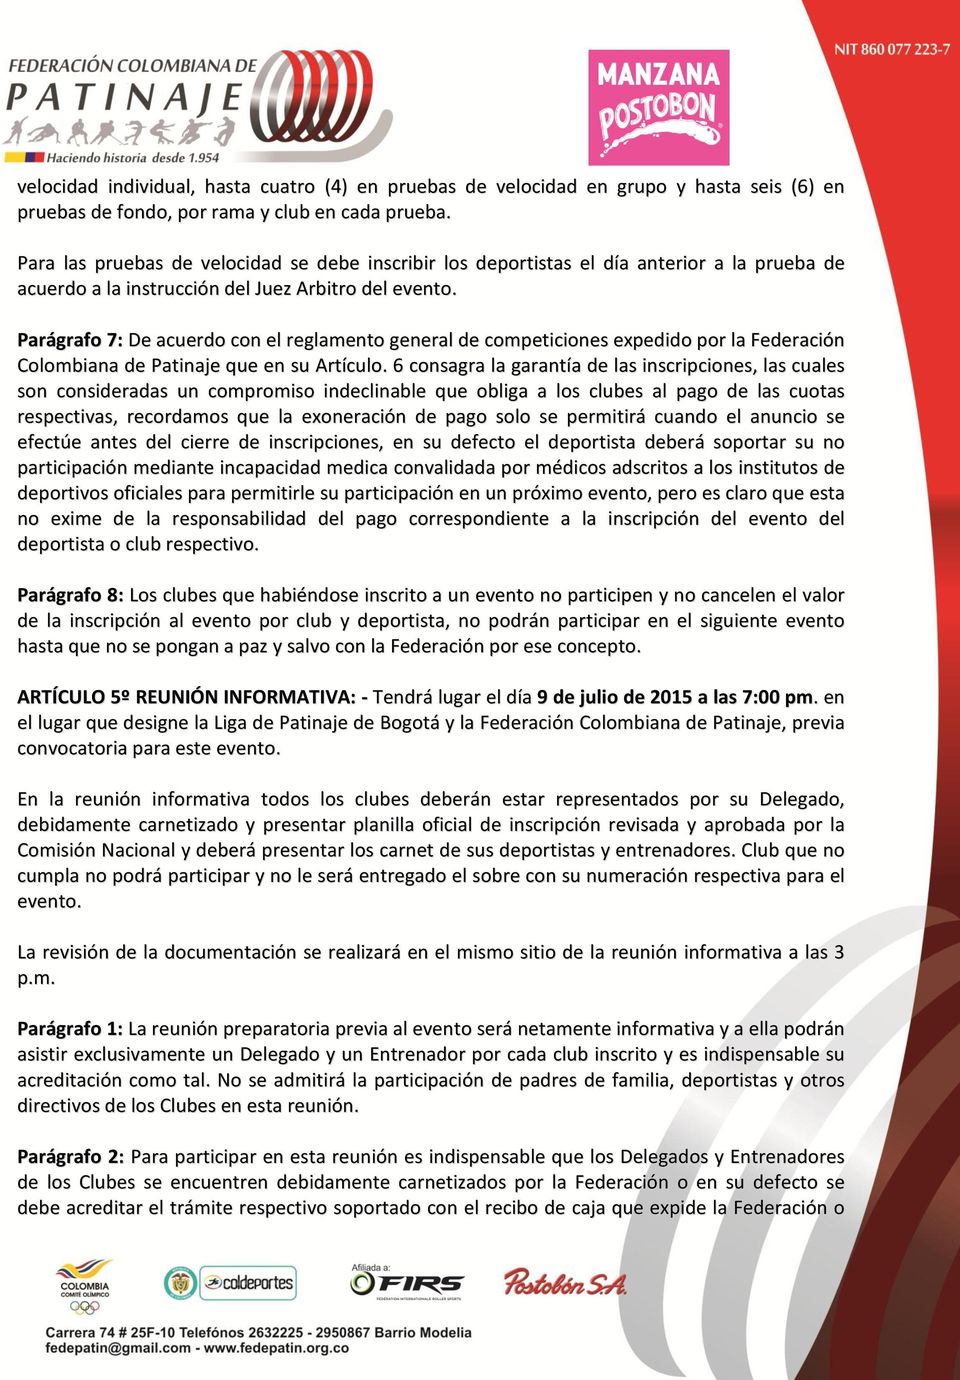 Parágrafo 7: De acuerdo con el reglamento general de competiciones expedido por la Federación Colombiana de Patinaje que en su Artículo.